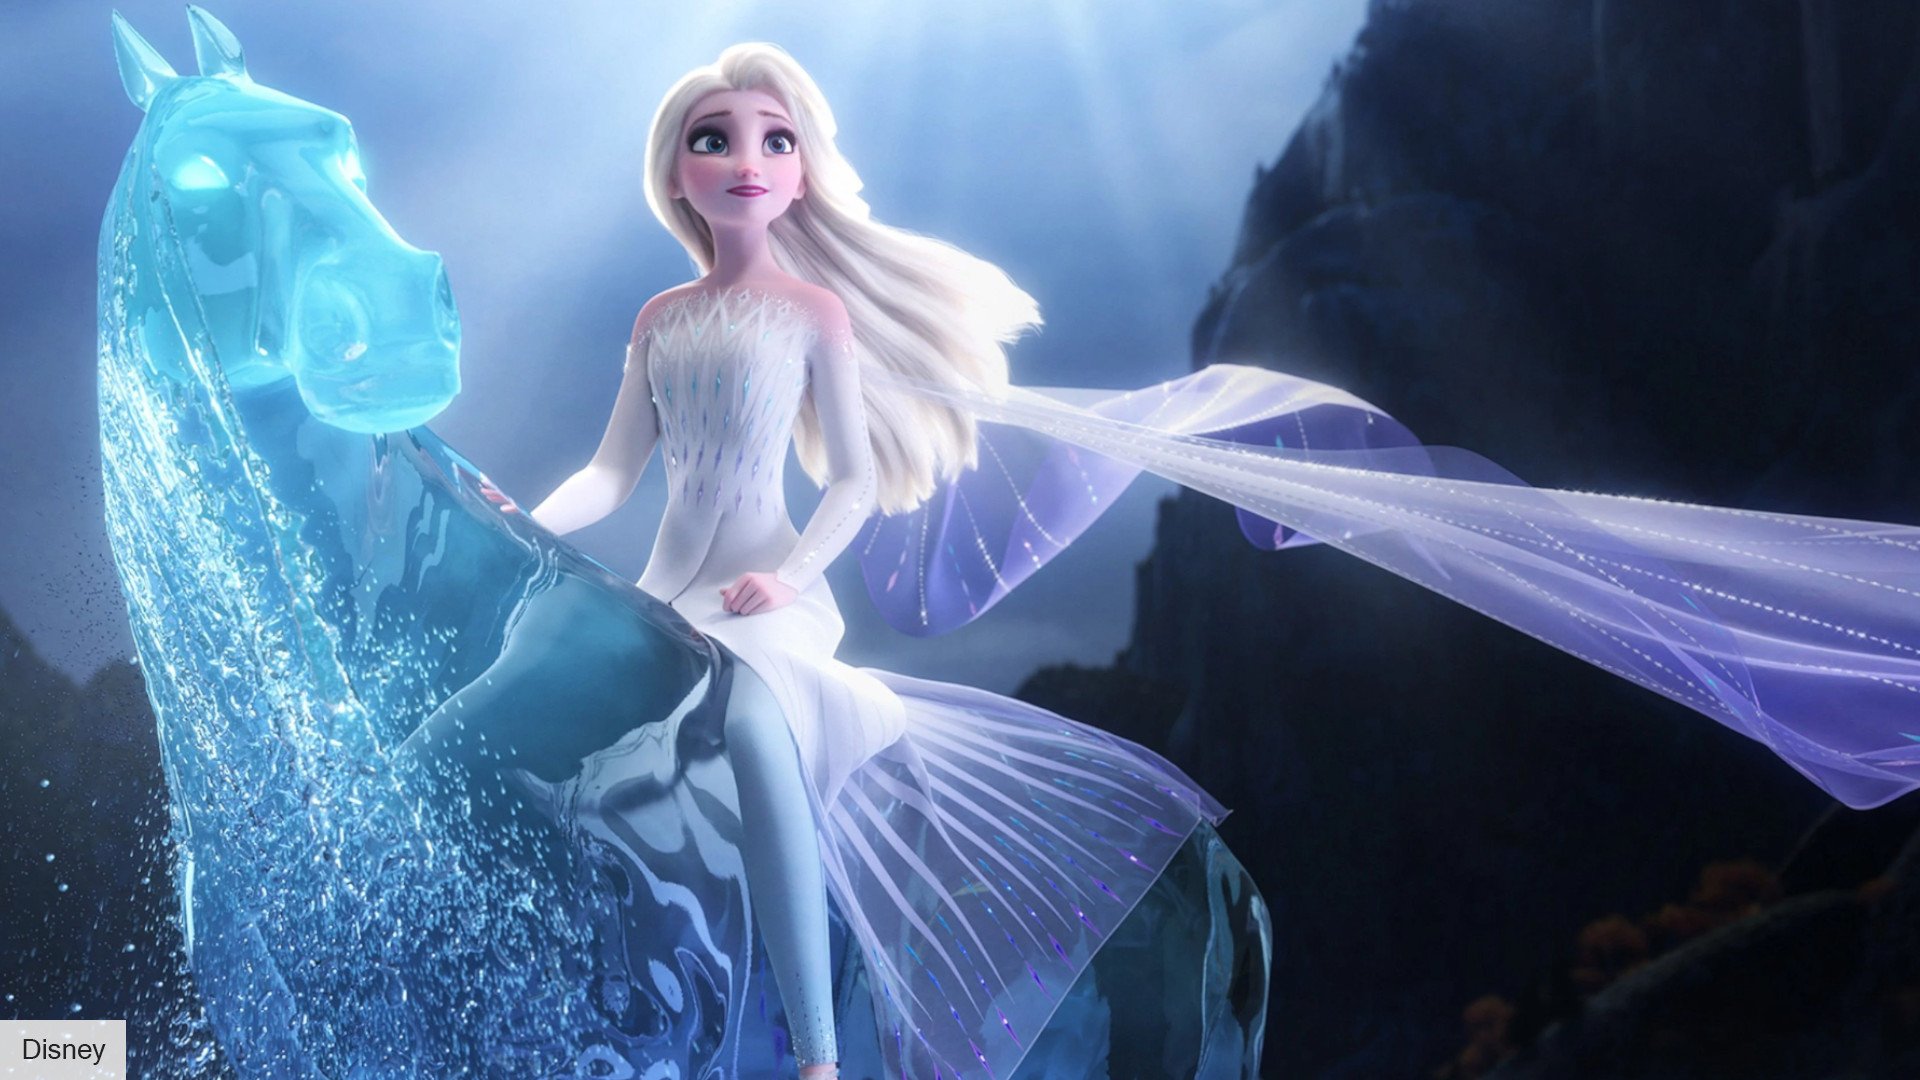 Frozen 3 release date: Idina Menzel as Elsa on a water horse in Frozen 2